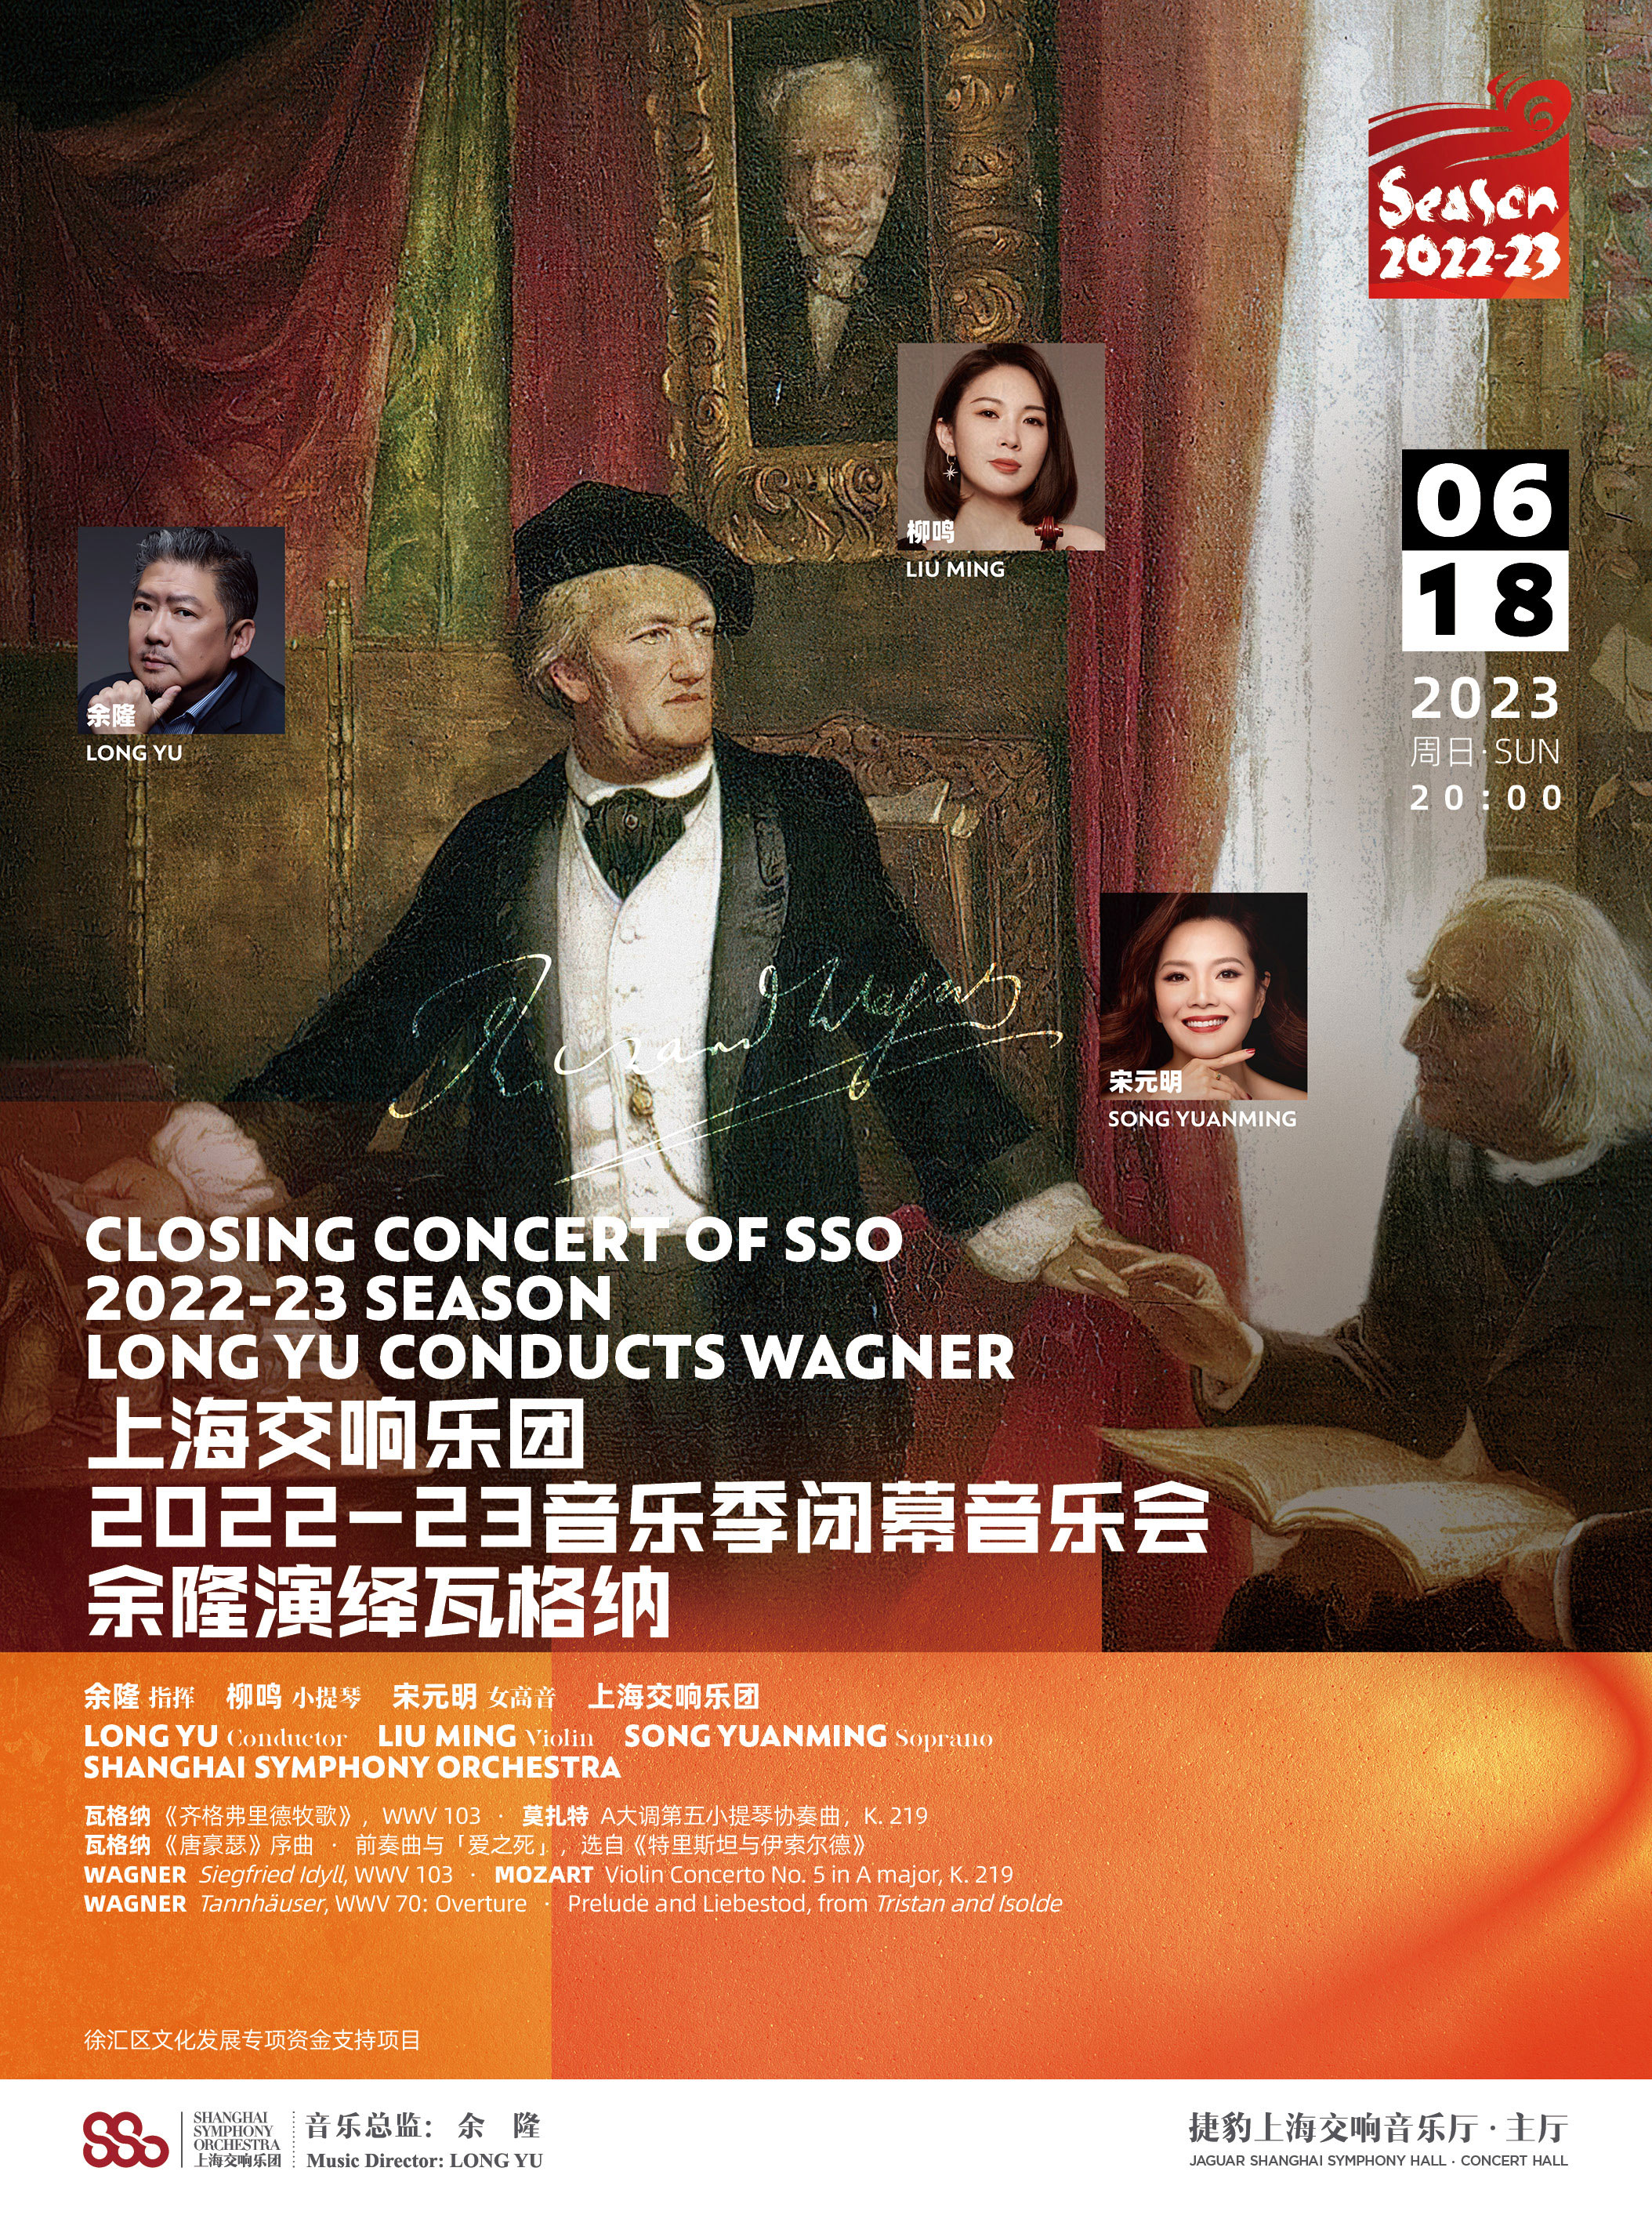 【上海站】上海交响乐团2022-23音乐季闭幕音乐会 余隆演绎瓦格纳